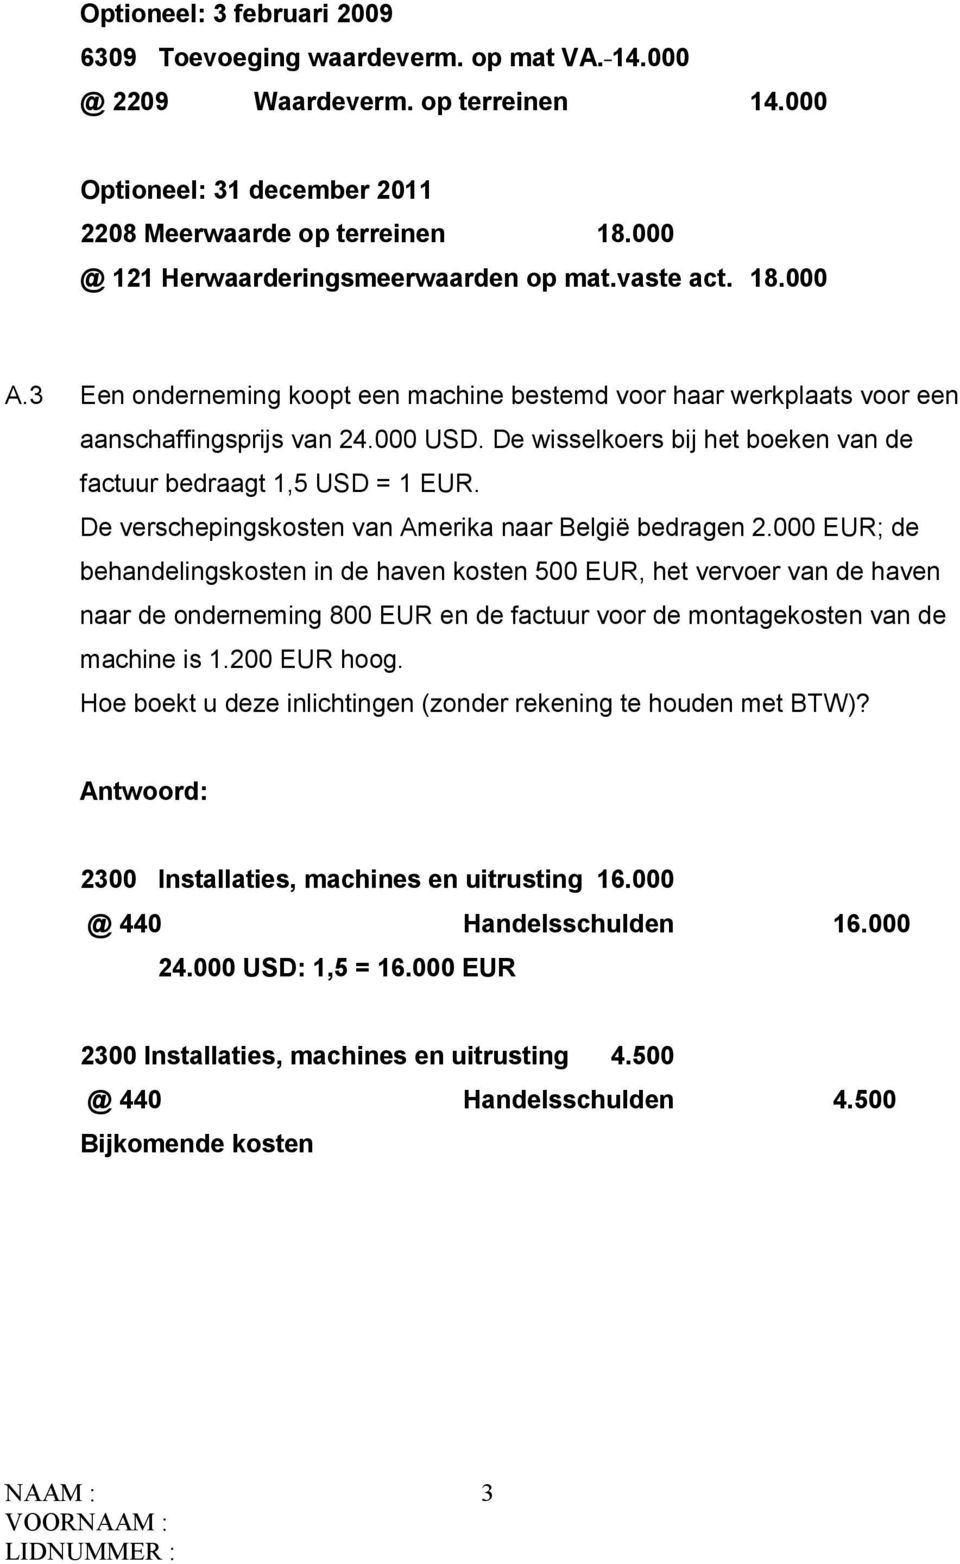 De wisselkoers bij het boeken van de factuur bedraagt 1,5 USD = 1 EUR. De verschepingskosten van Amerika naar België bedragen 2.